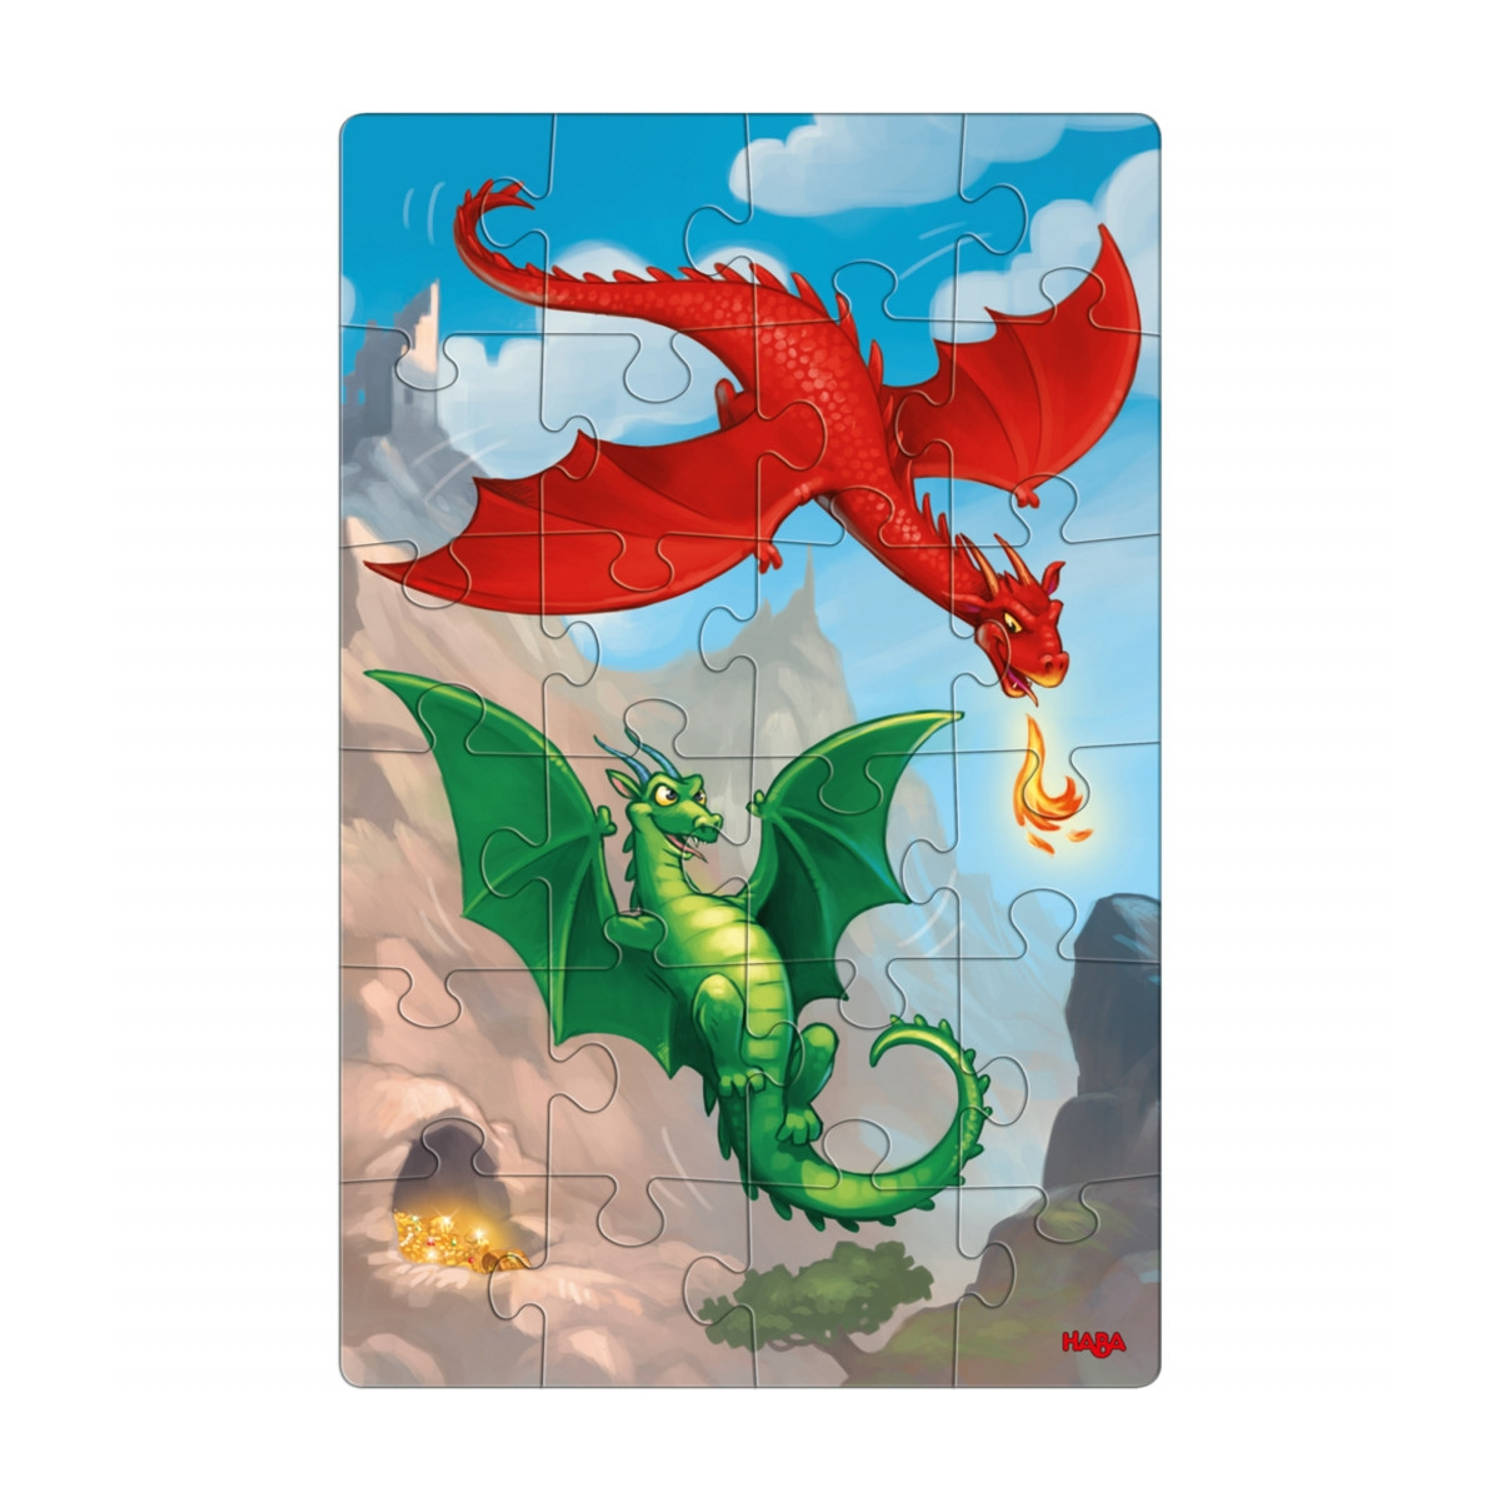 Haba legpuzzel Puzzels Draken junior karton 2 x 24 stukjes